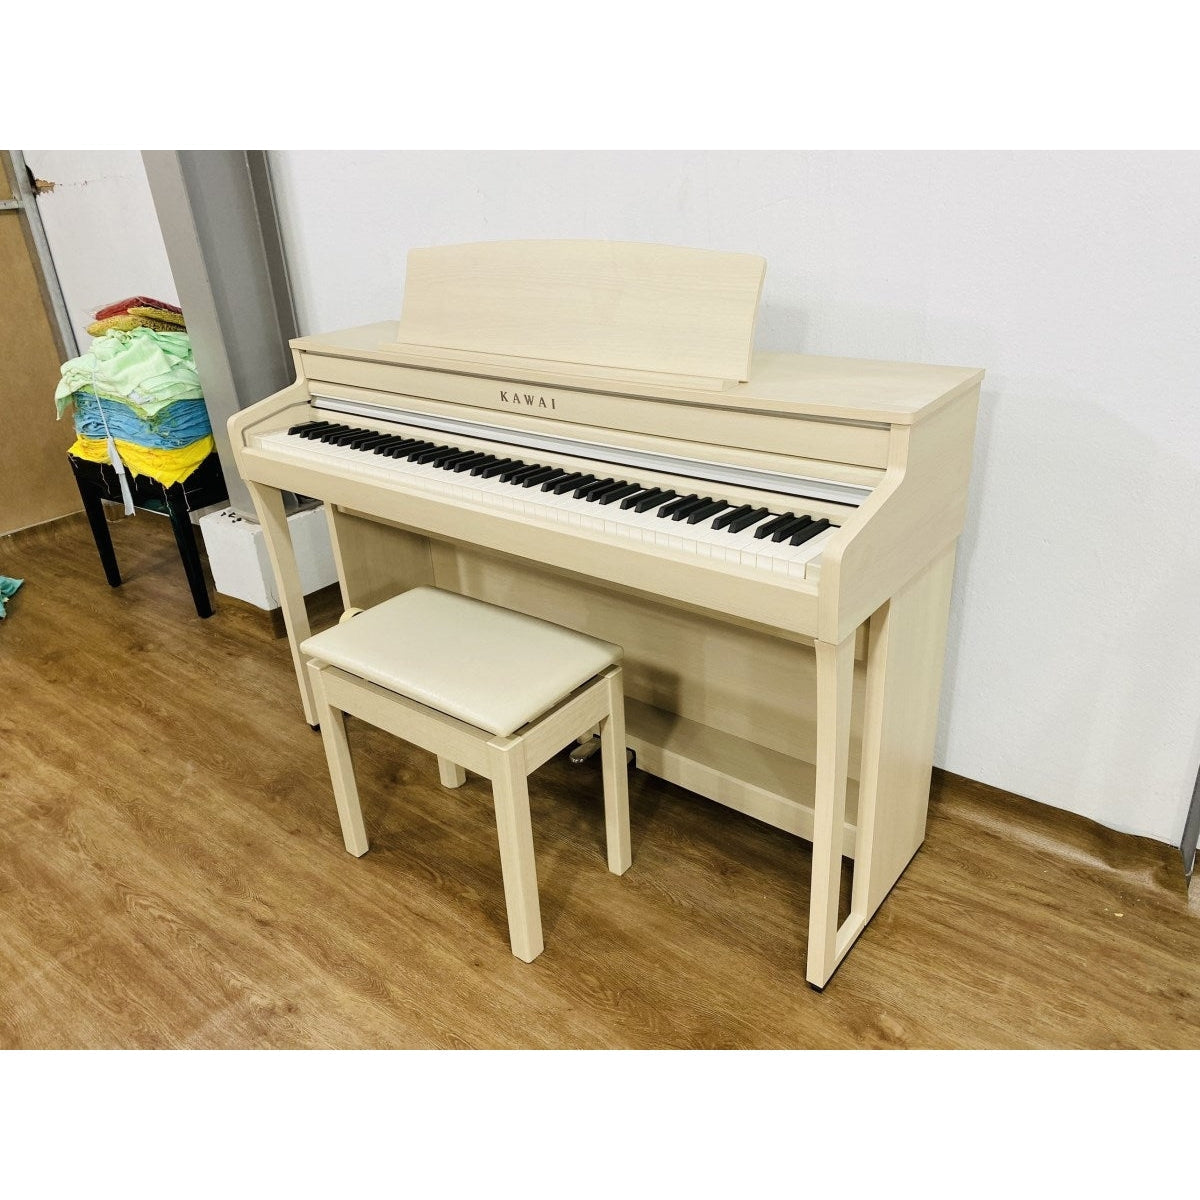 Đàn Piano Điện Kawai CA49 - Qua Sử Dụng